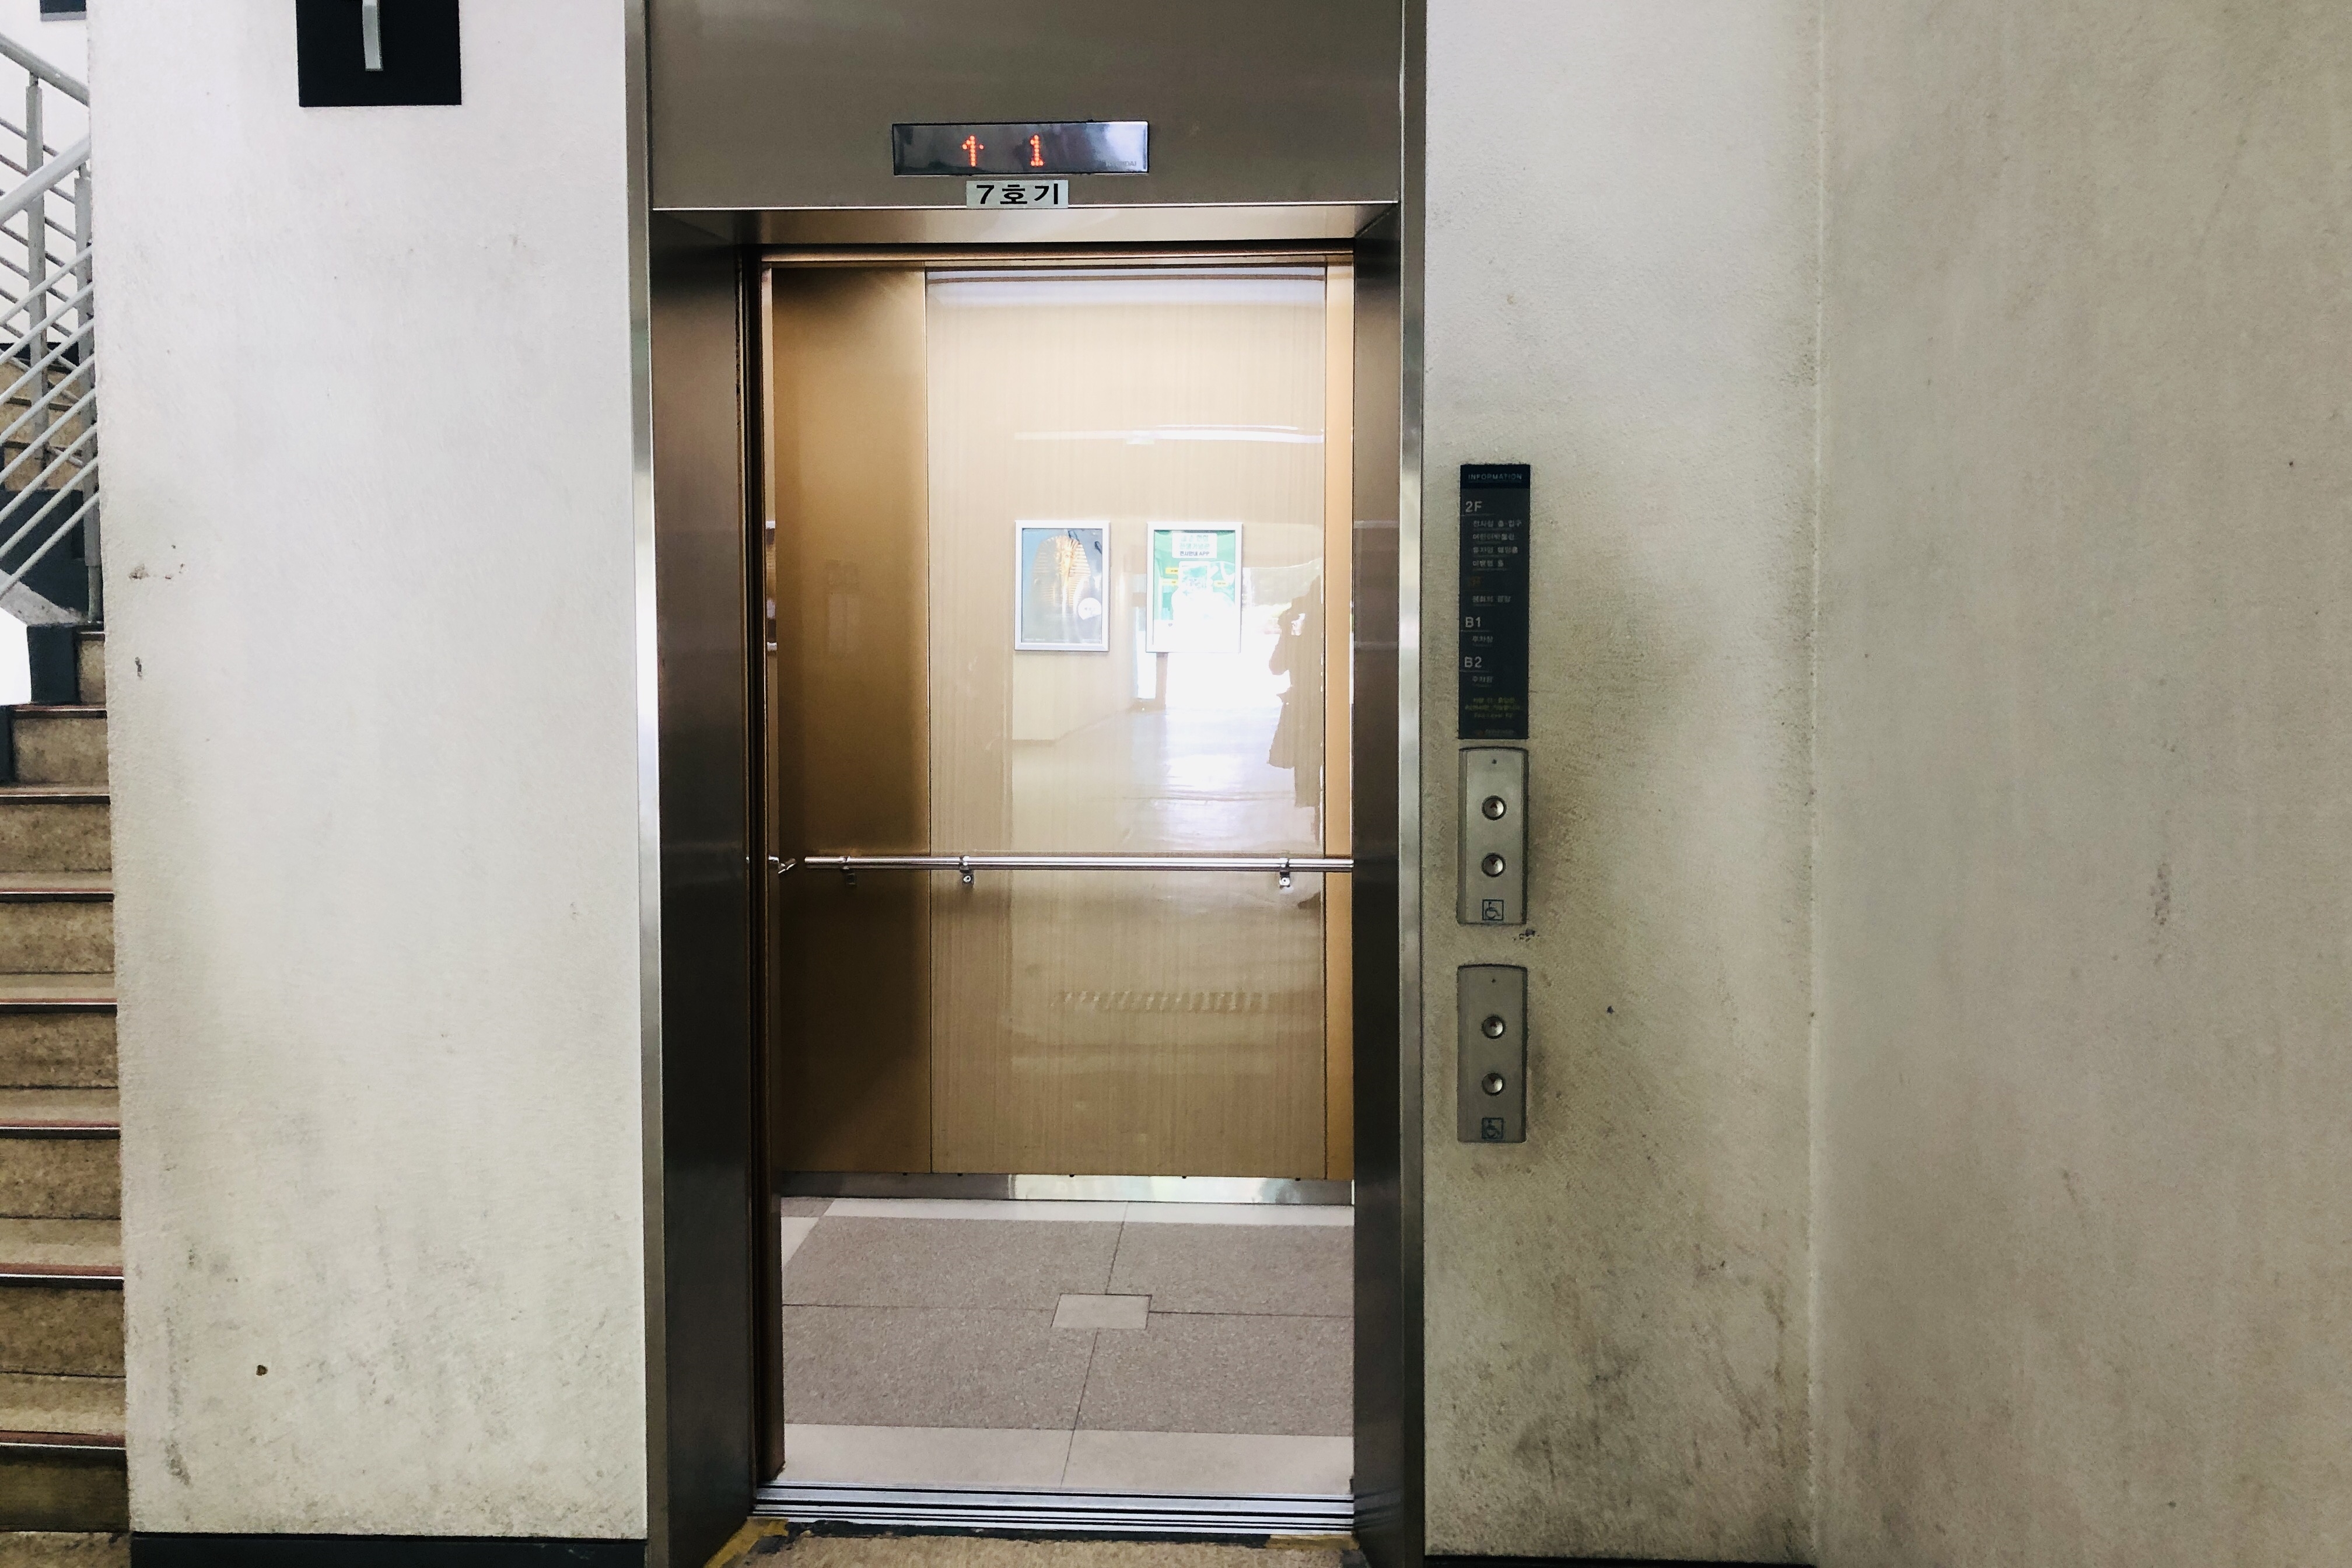 엘리베이터0 : 열린 문 사이로 보이는 다소 좁은 공간의 엘리베이터